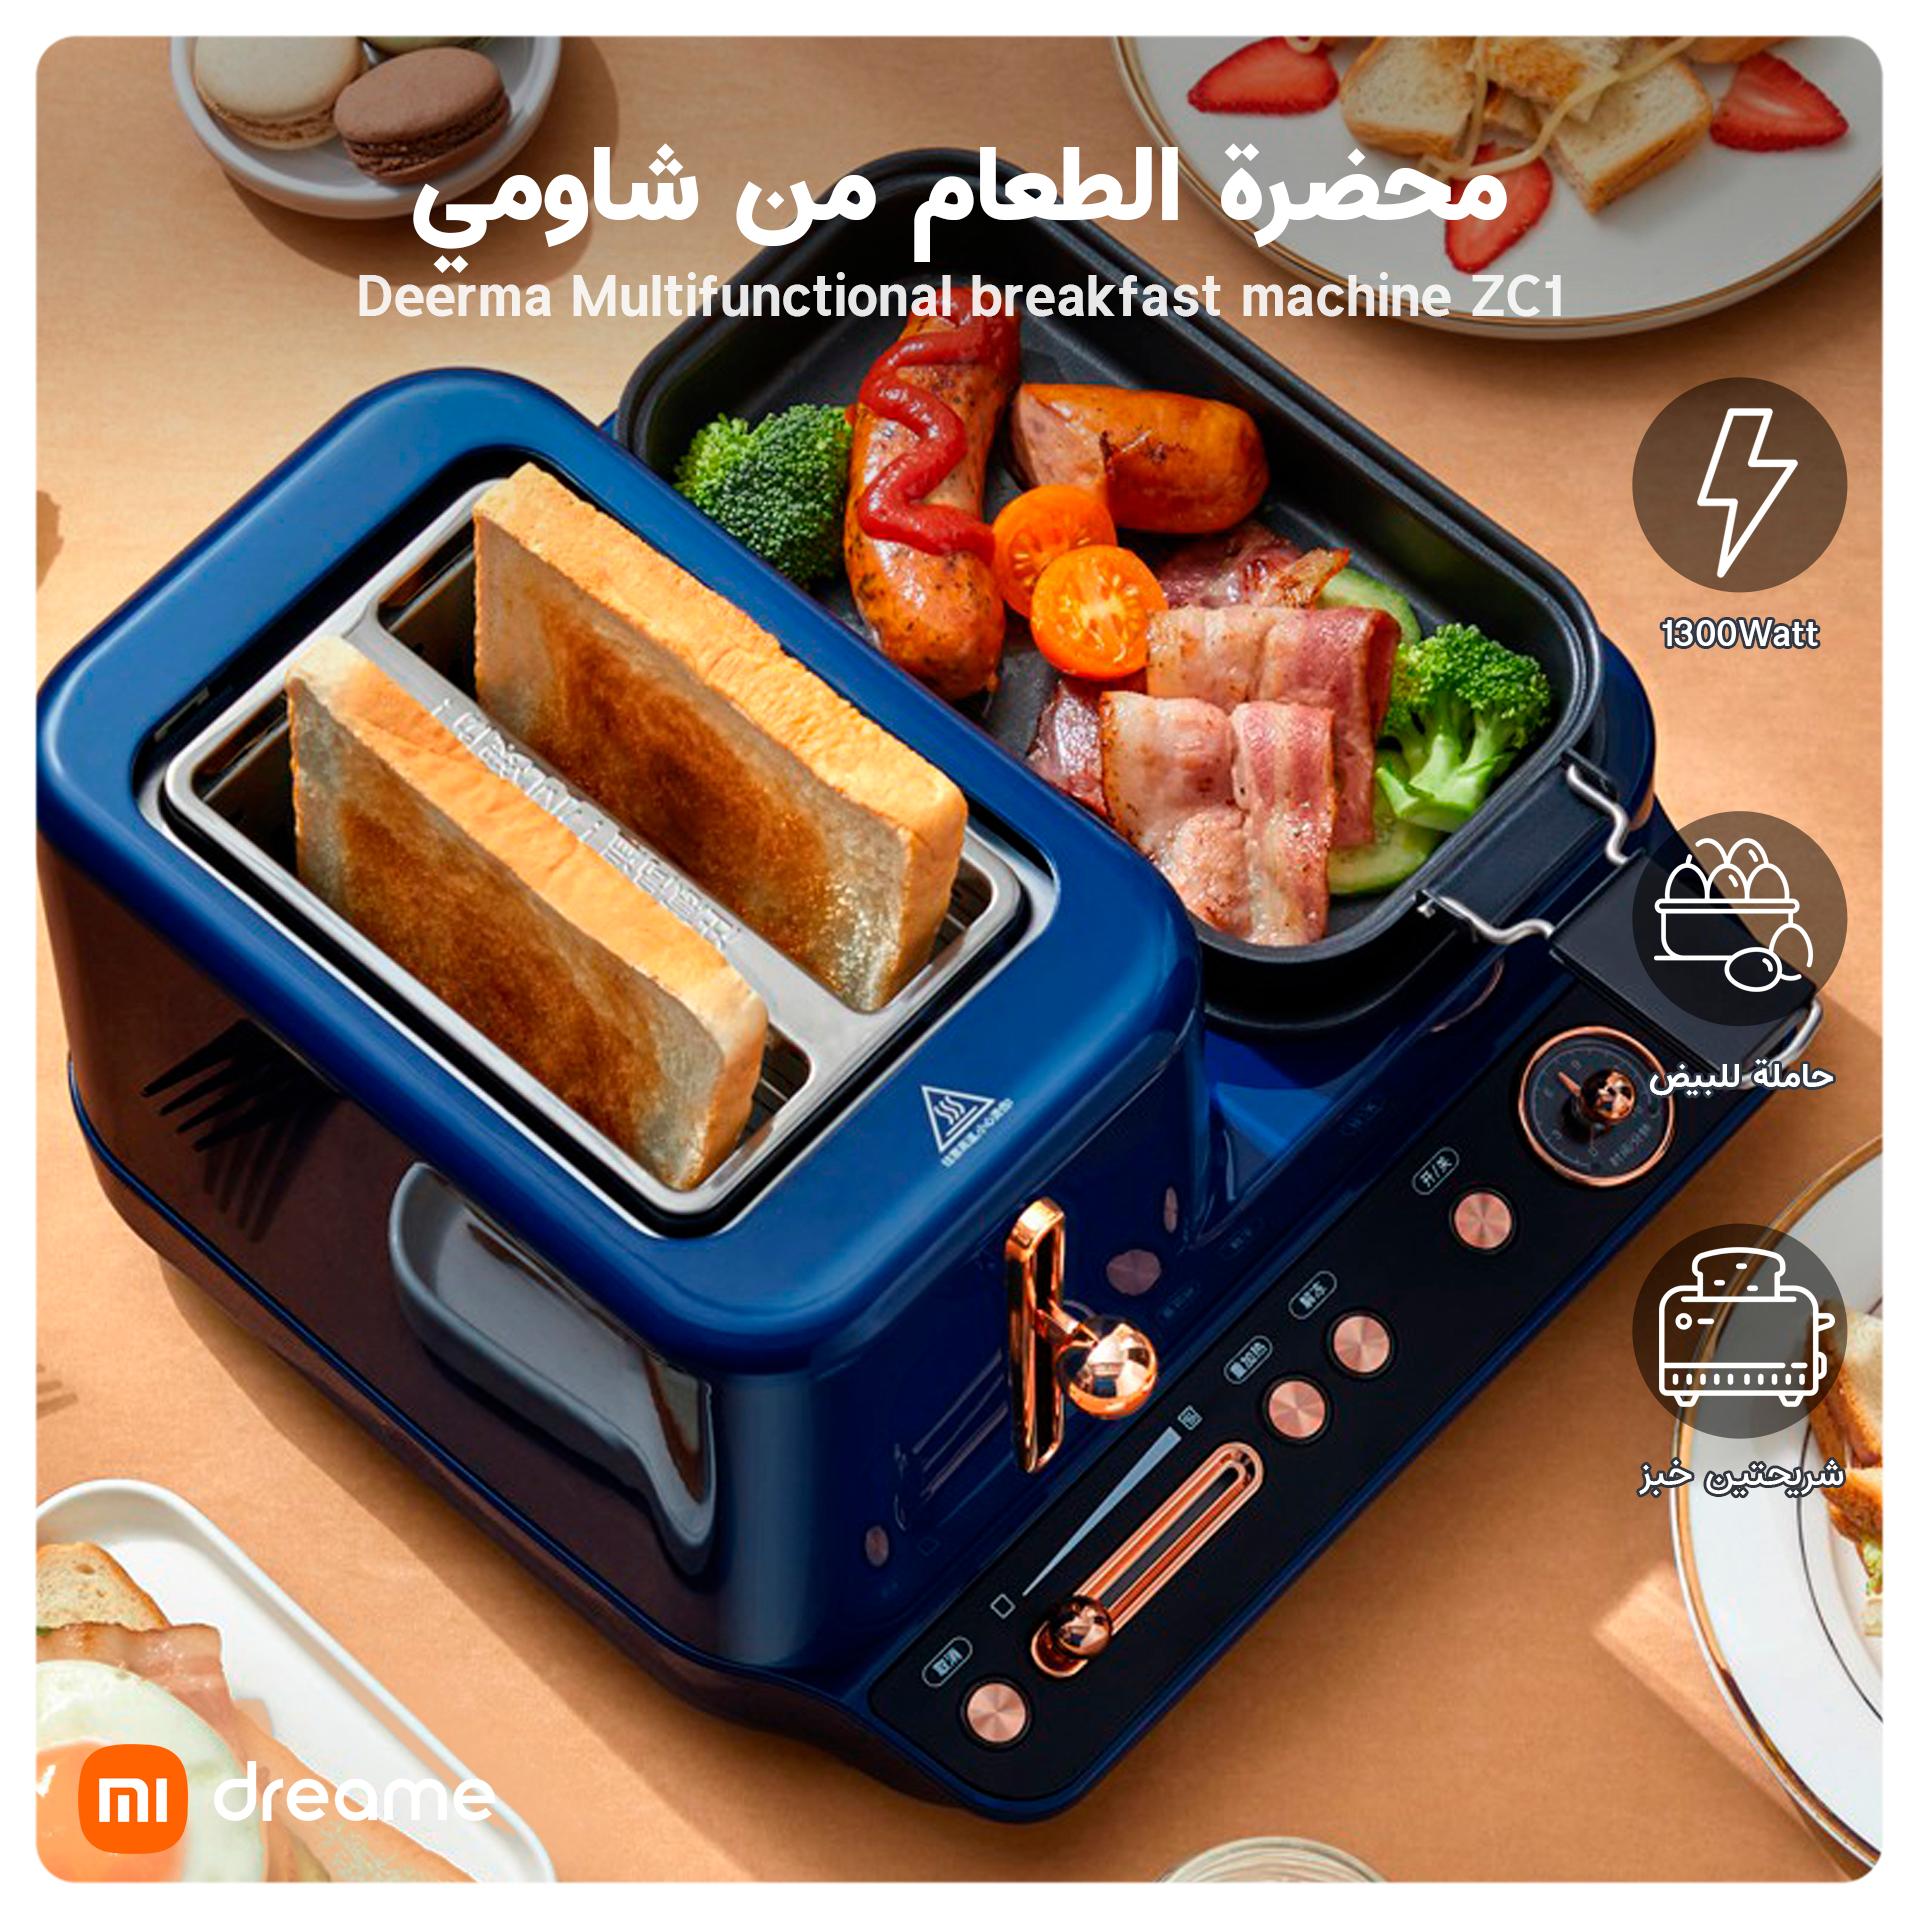 Xiaomi Deerma Multifunctional breakfast machine ZC10 -